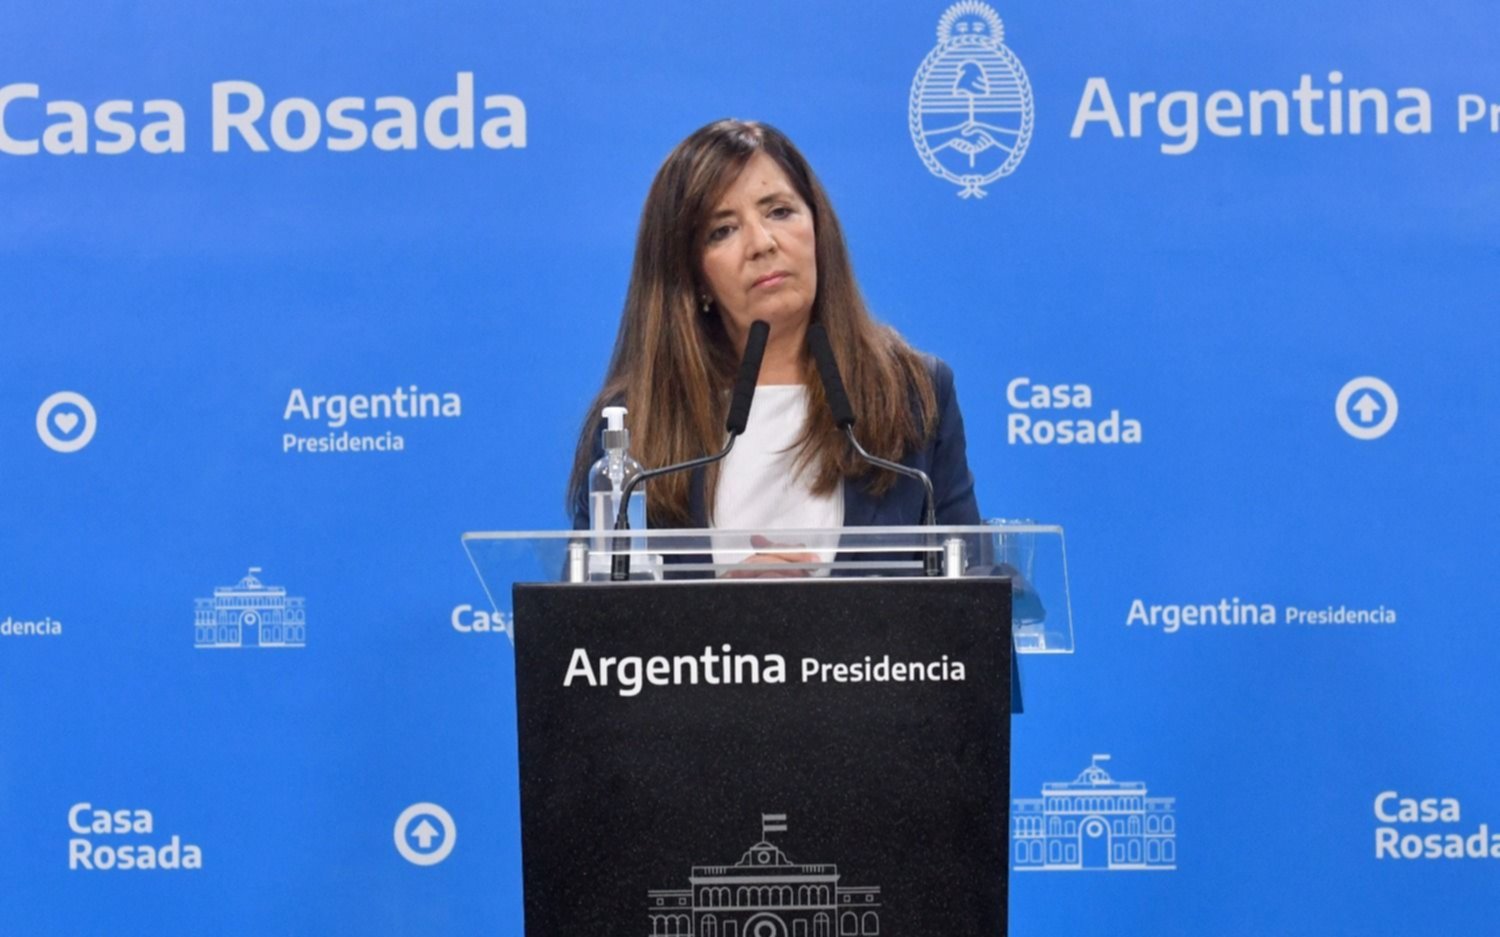 El Gobierno le respondió a Rodríguez Larreta: "Escuche, no tenga la respuesta preparada porque sí"